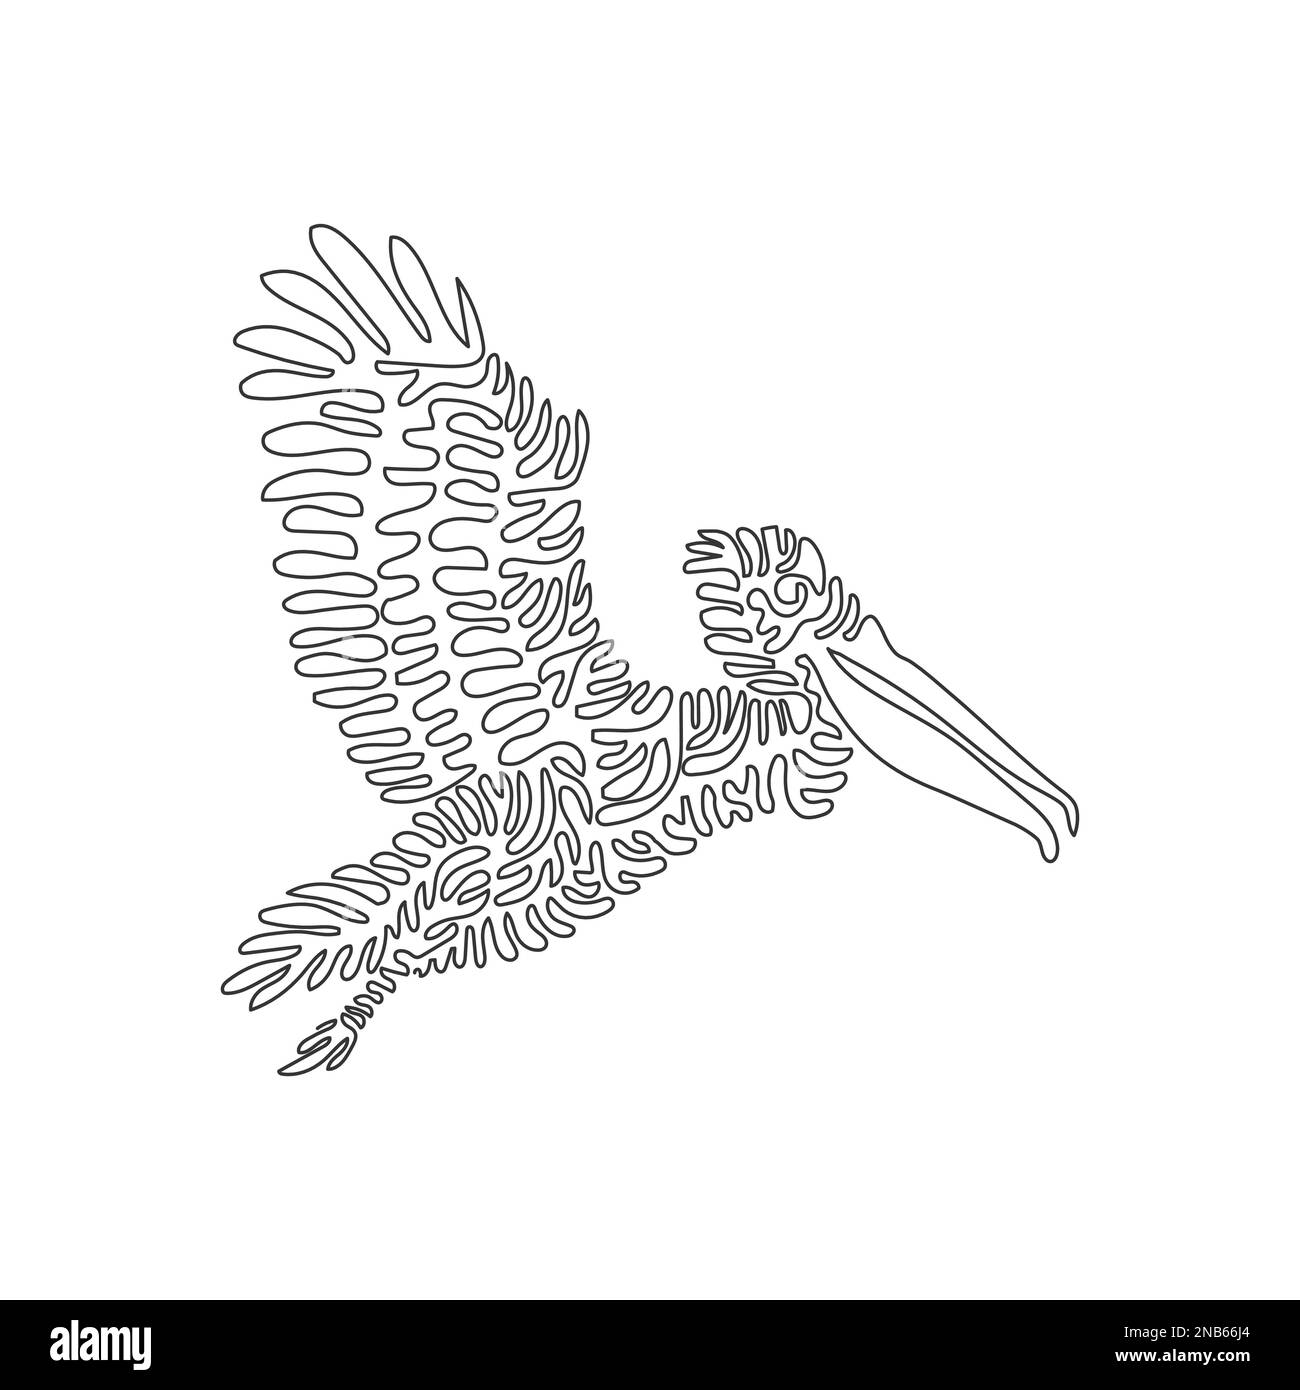 Un seul dessin d'une ligne de pelican volant mignon. Dessin de ligne continue dessin graphique illustration vectorielle d'un pélican est le plus grand des oiseaux vivants Illustration de Vecteur